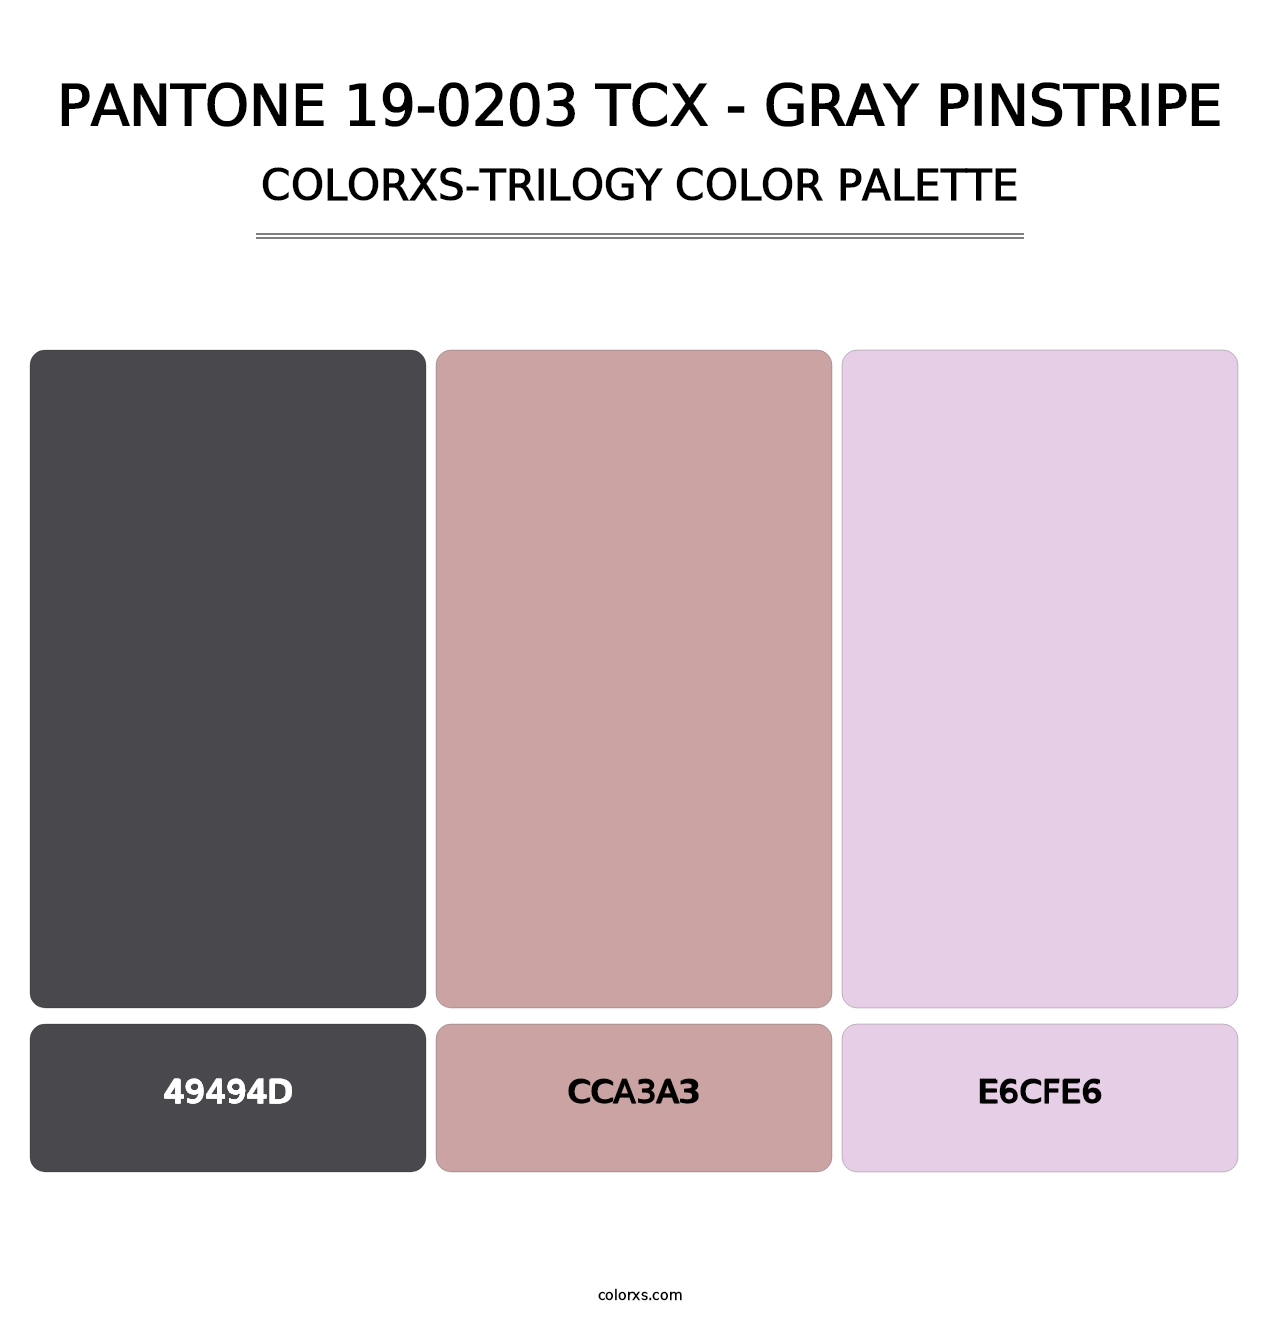 PANTONE 19-0203 TCX - Gray Pinstripe - Colorxs Trilogy Palette